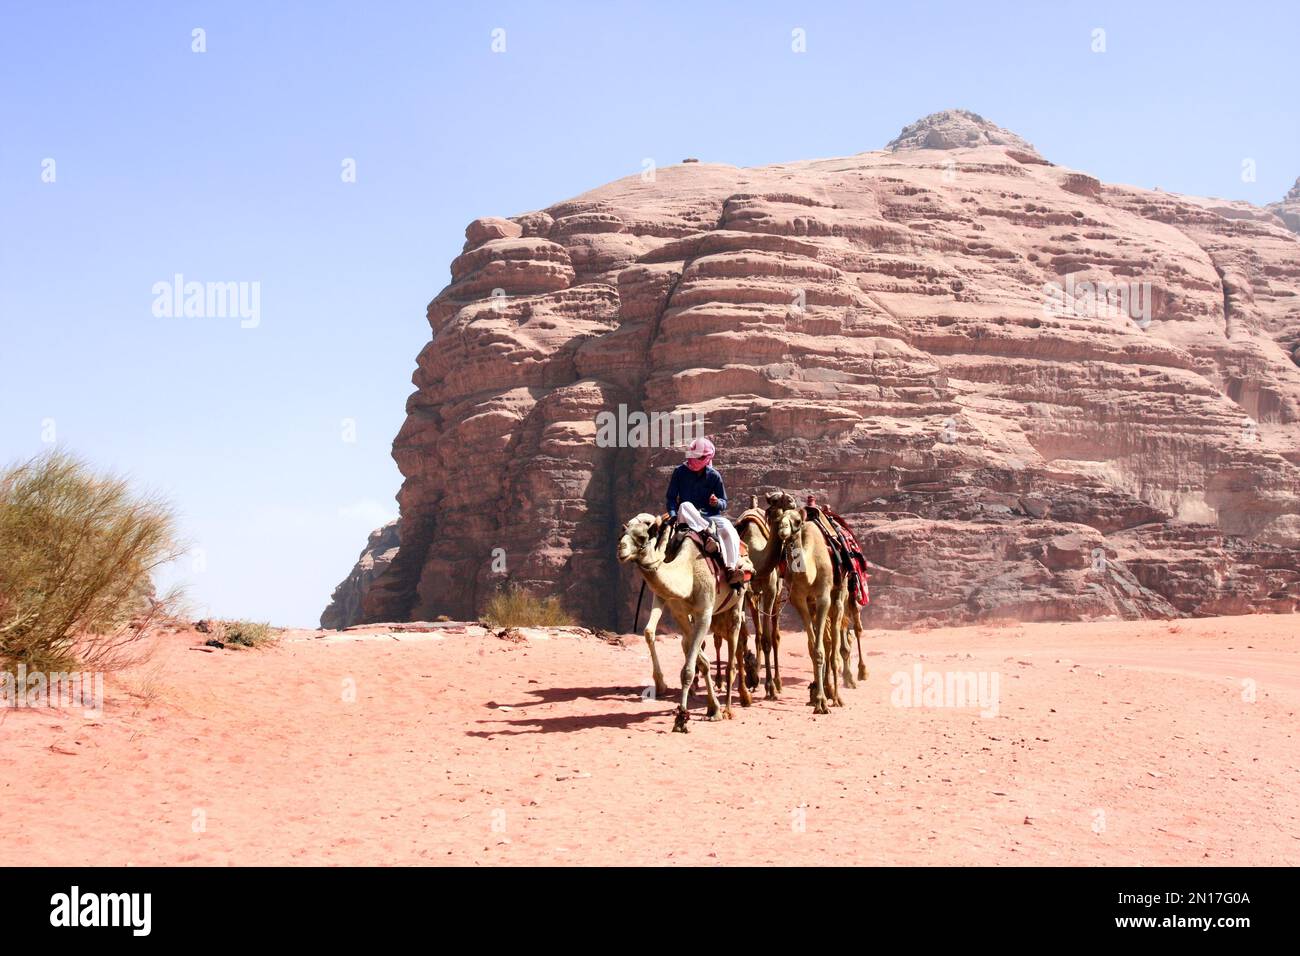 Beduino con carovana di cammelli giro dromedario in fuoristrada sulla sabbia tra le rocce nel deserto di Wadi Rum, Giordania. Paesaggio desertico con cammelli, sabbia rossa a Foto Stock